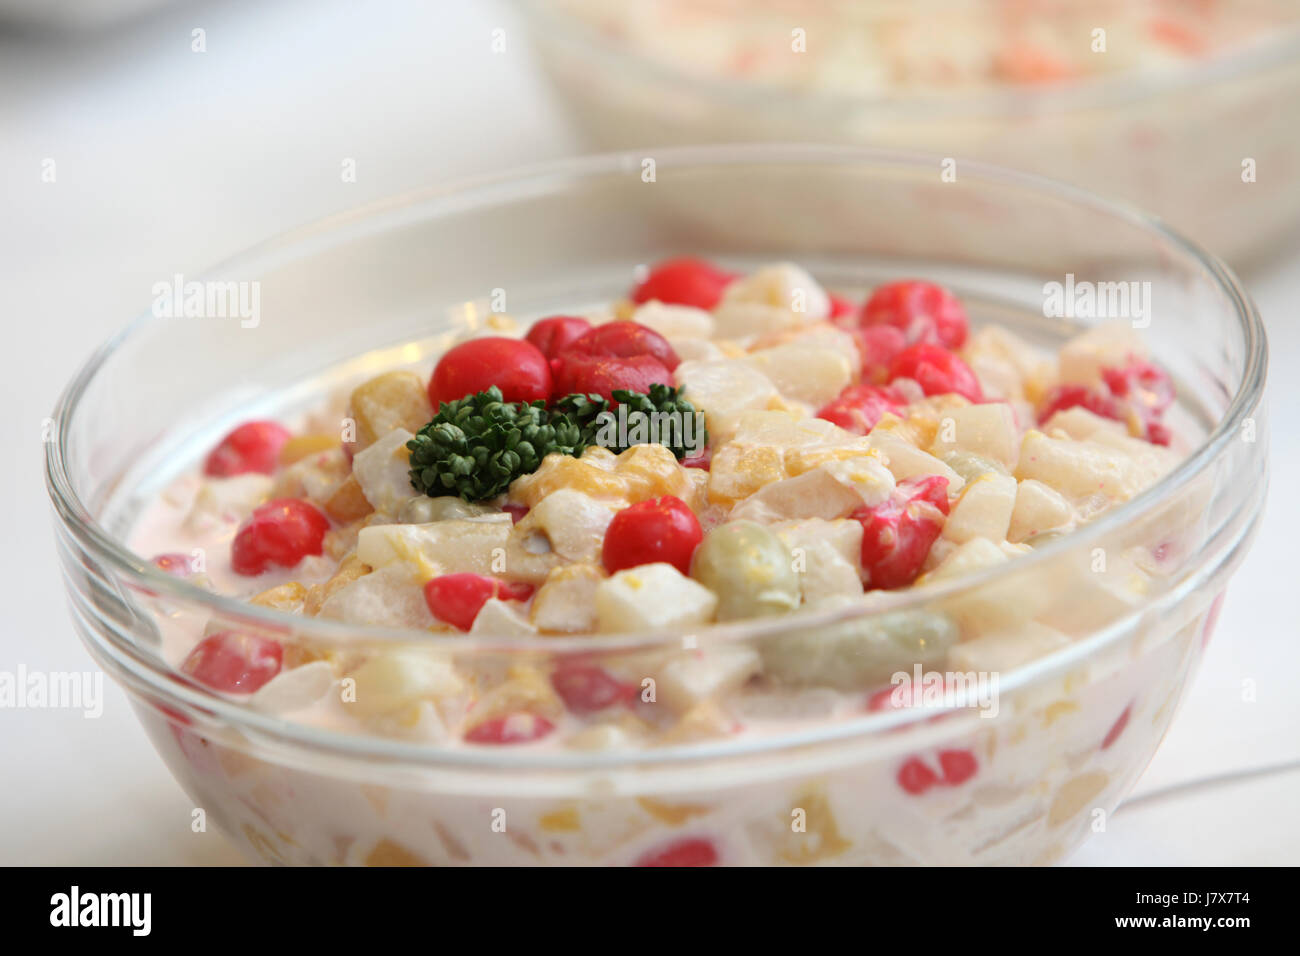 frischer Salat mit verschiedenen Zutaten - Textfreiraum Stockfoto